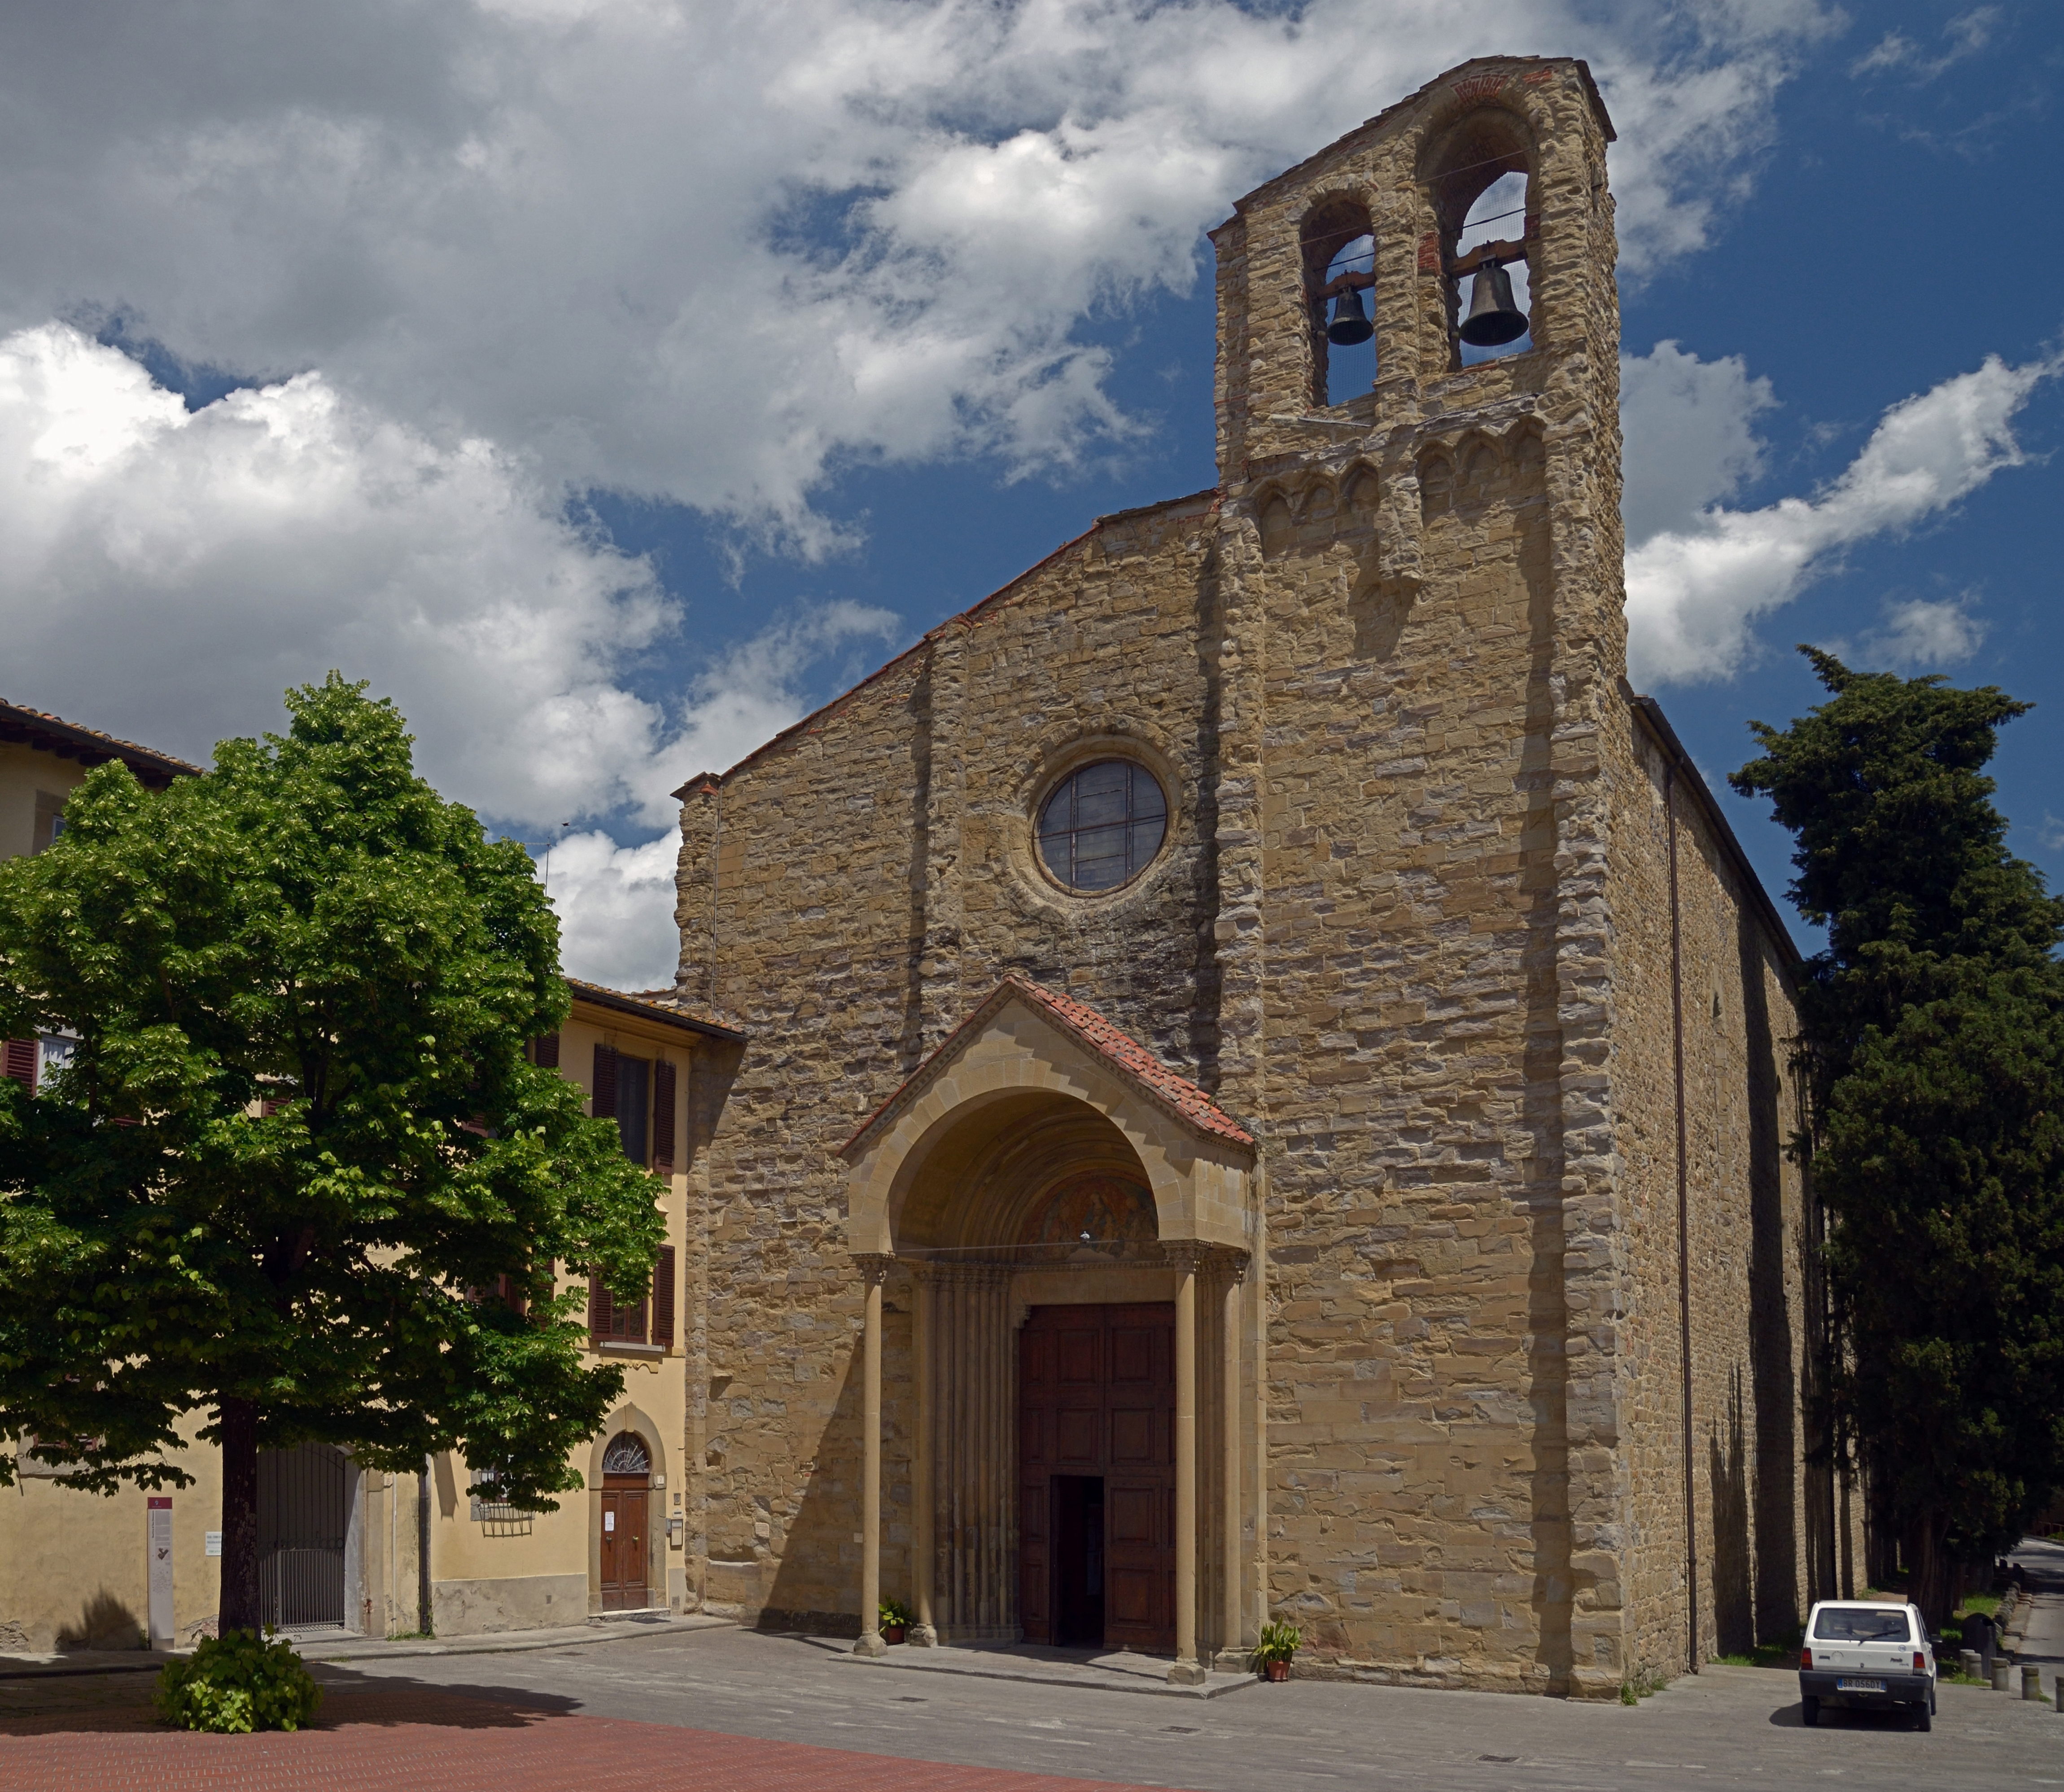 Church of San Domenico in Arezzo, Italy